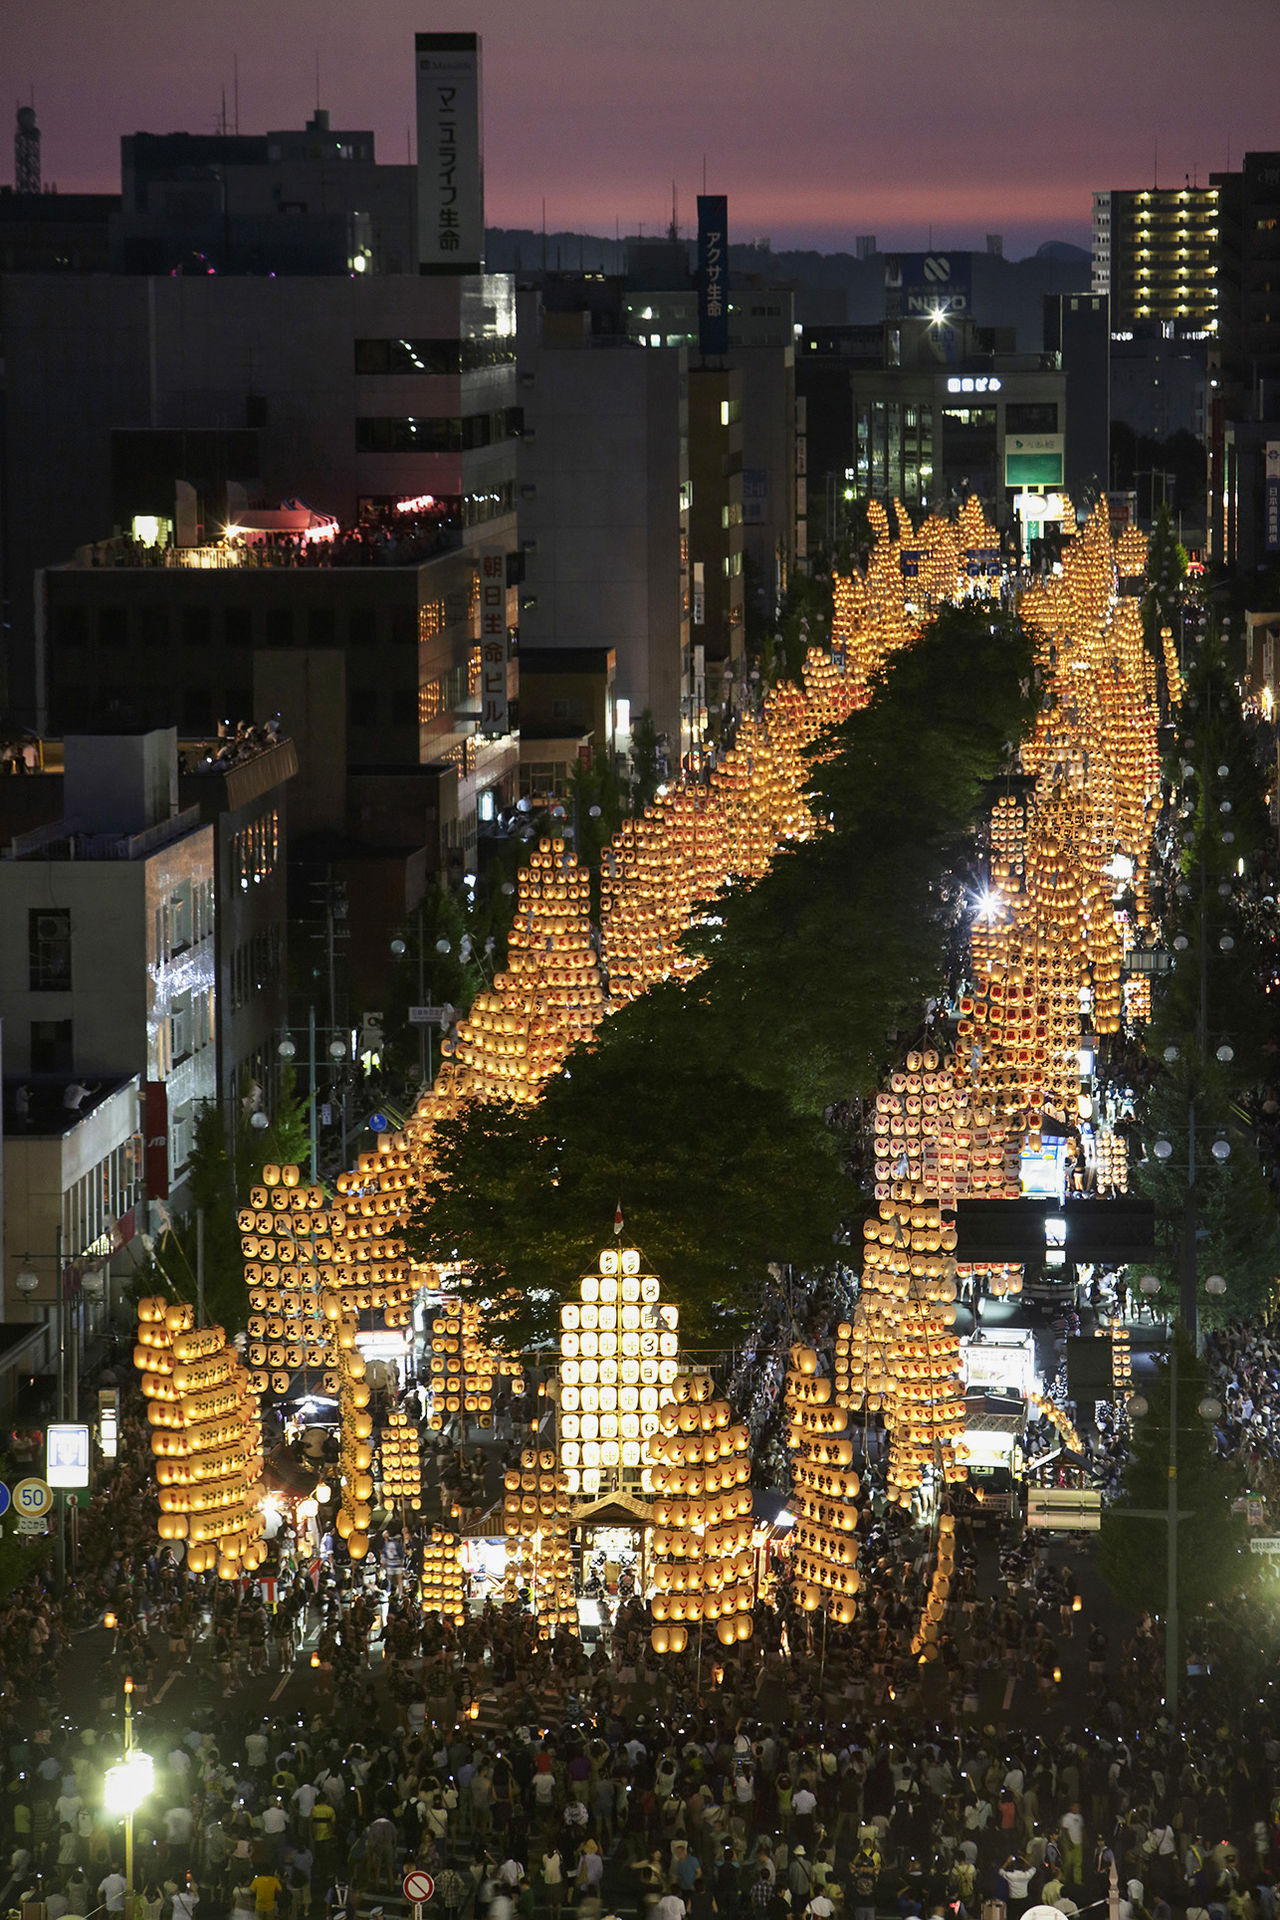 La avenida principal repleta de faroles que imitan a las espigas del arroz. (Fotografía por cortesía del Comité Ejecutivo del Festival de los Pértigas con Faroles de la Ciudad de Akita.)